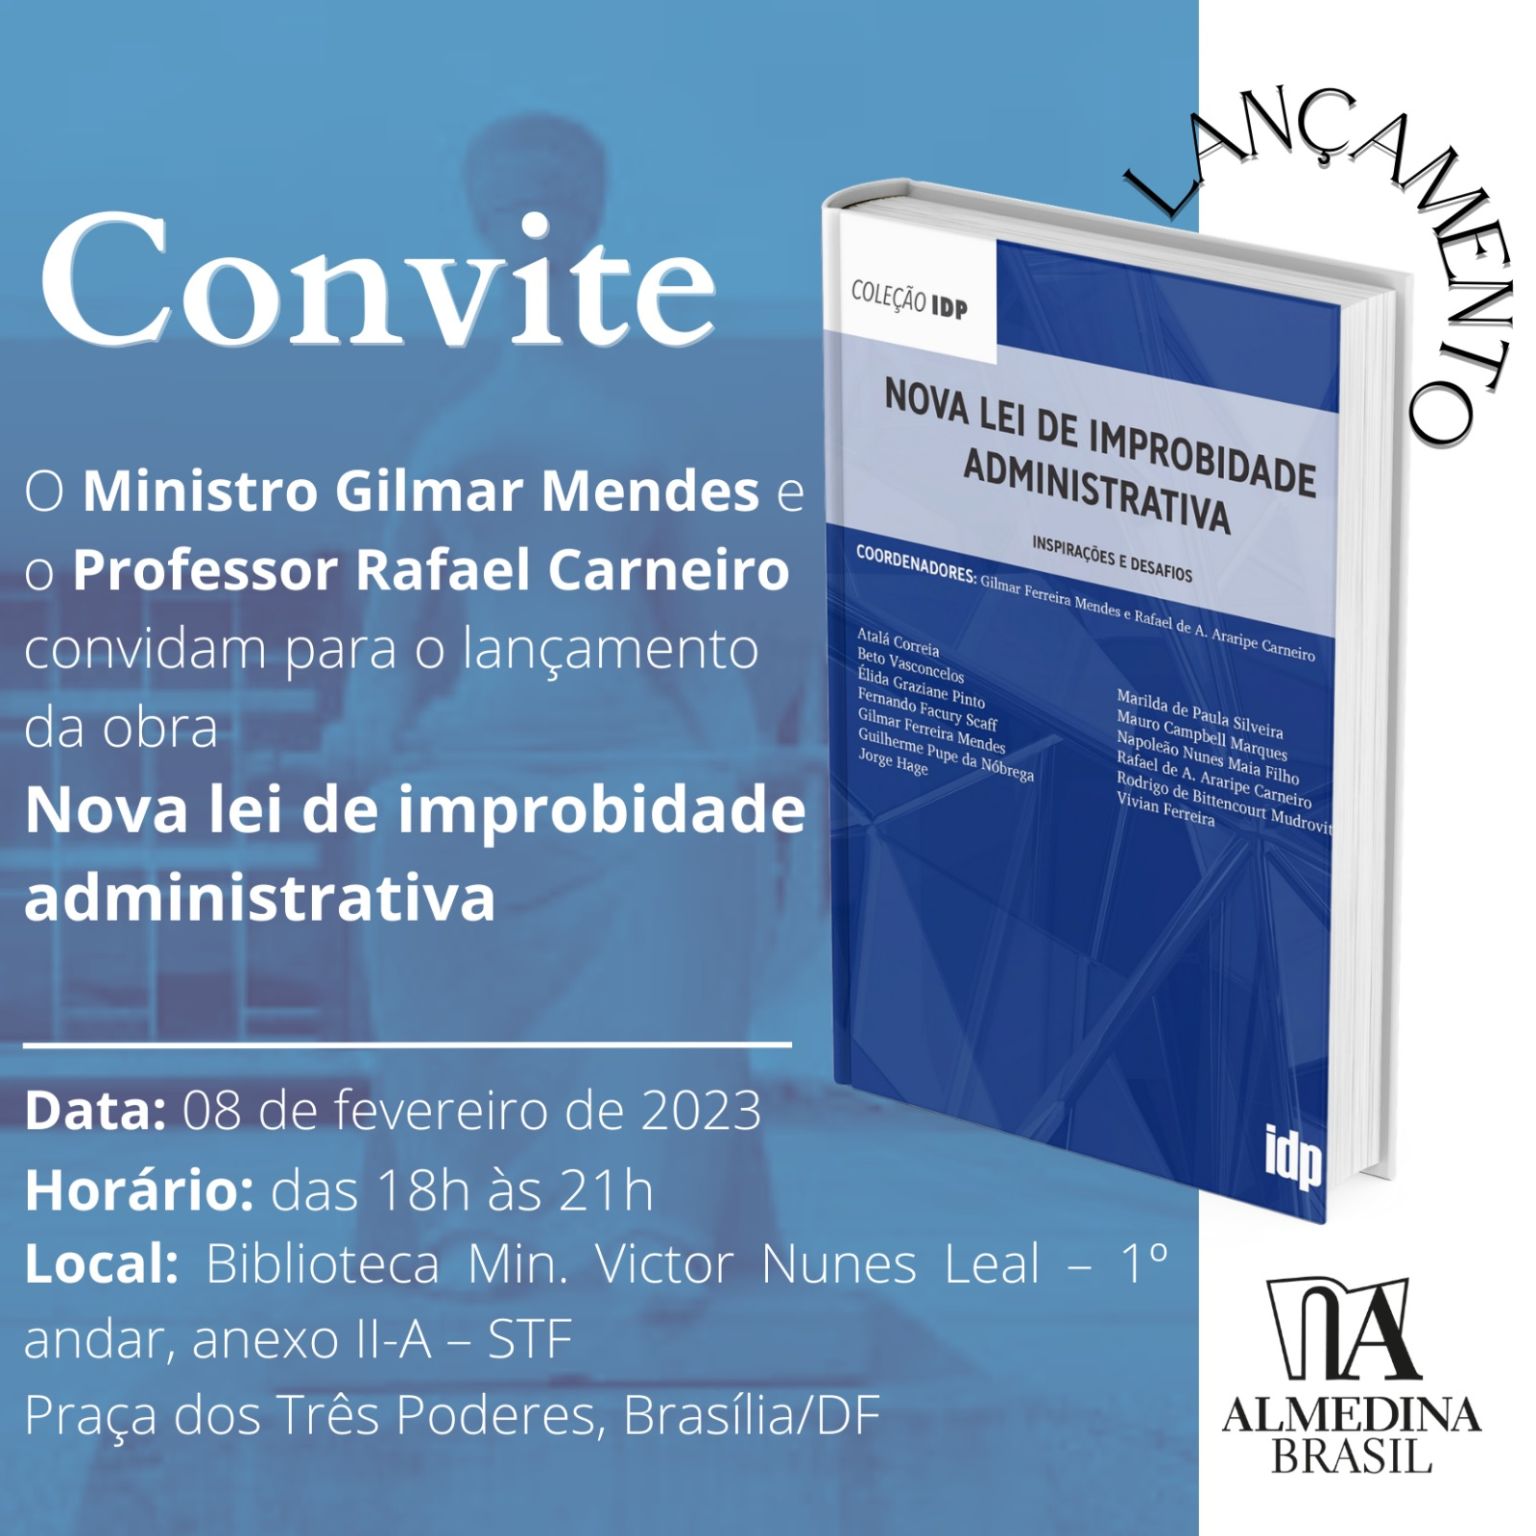 Ministro Gilmar Mendes e professor Rafael Carneiro lançam “Nova lei de improbidade administrativa”.